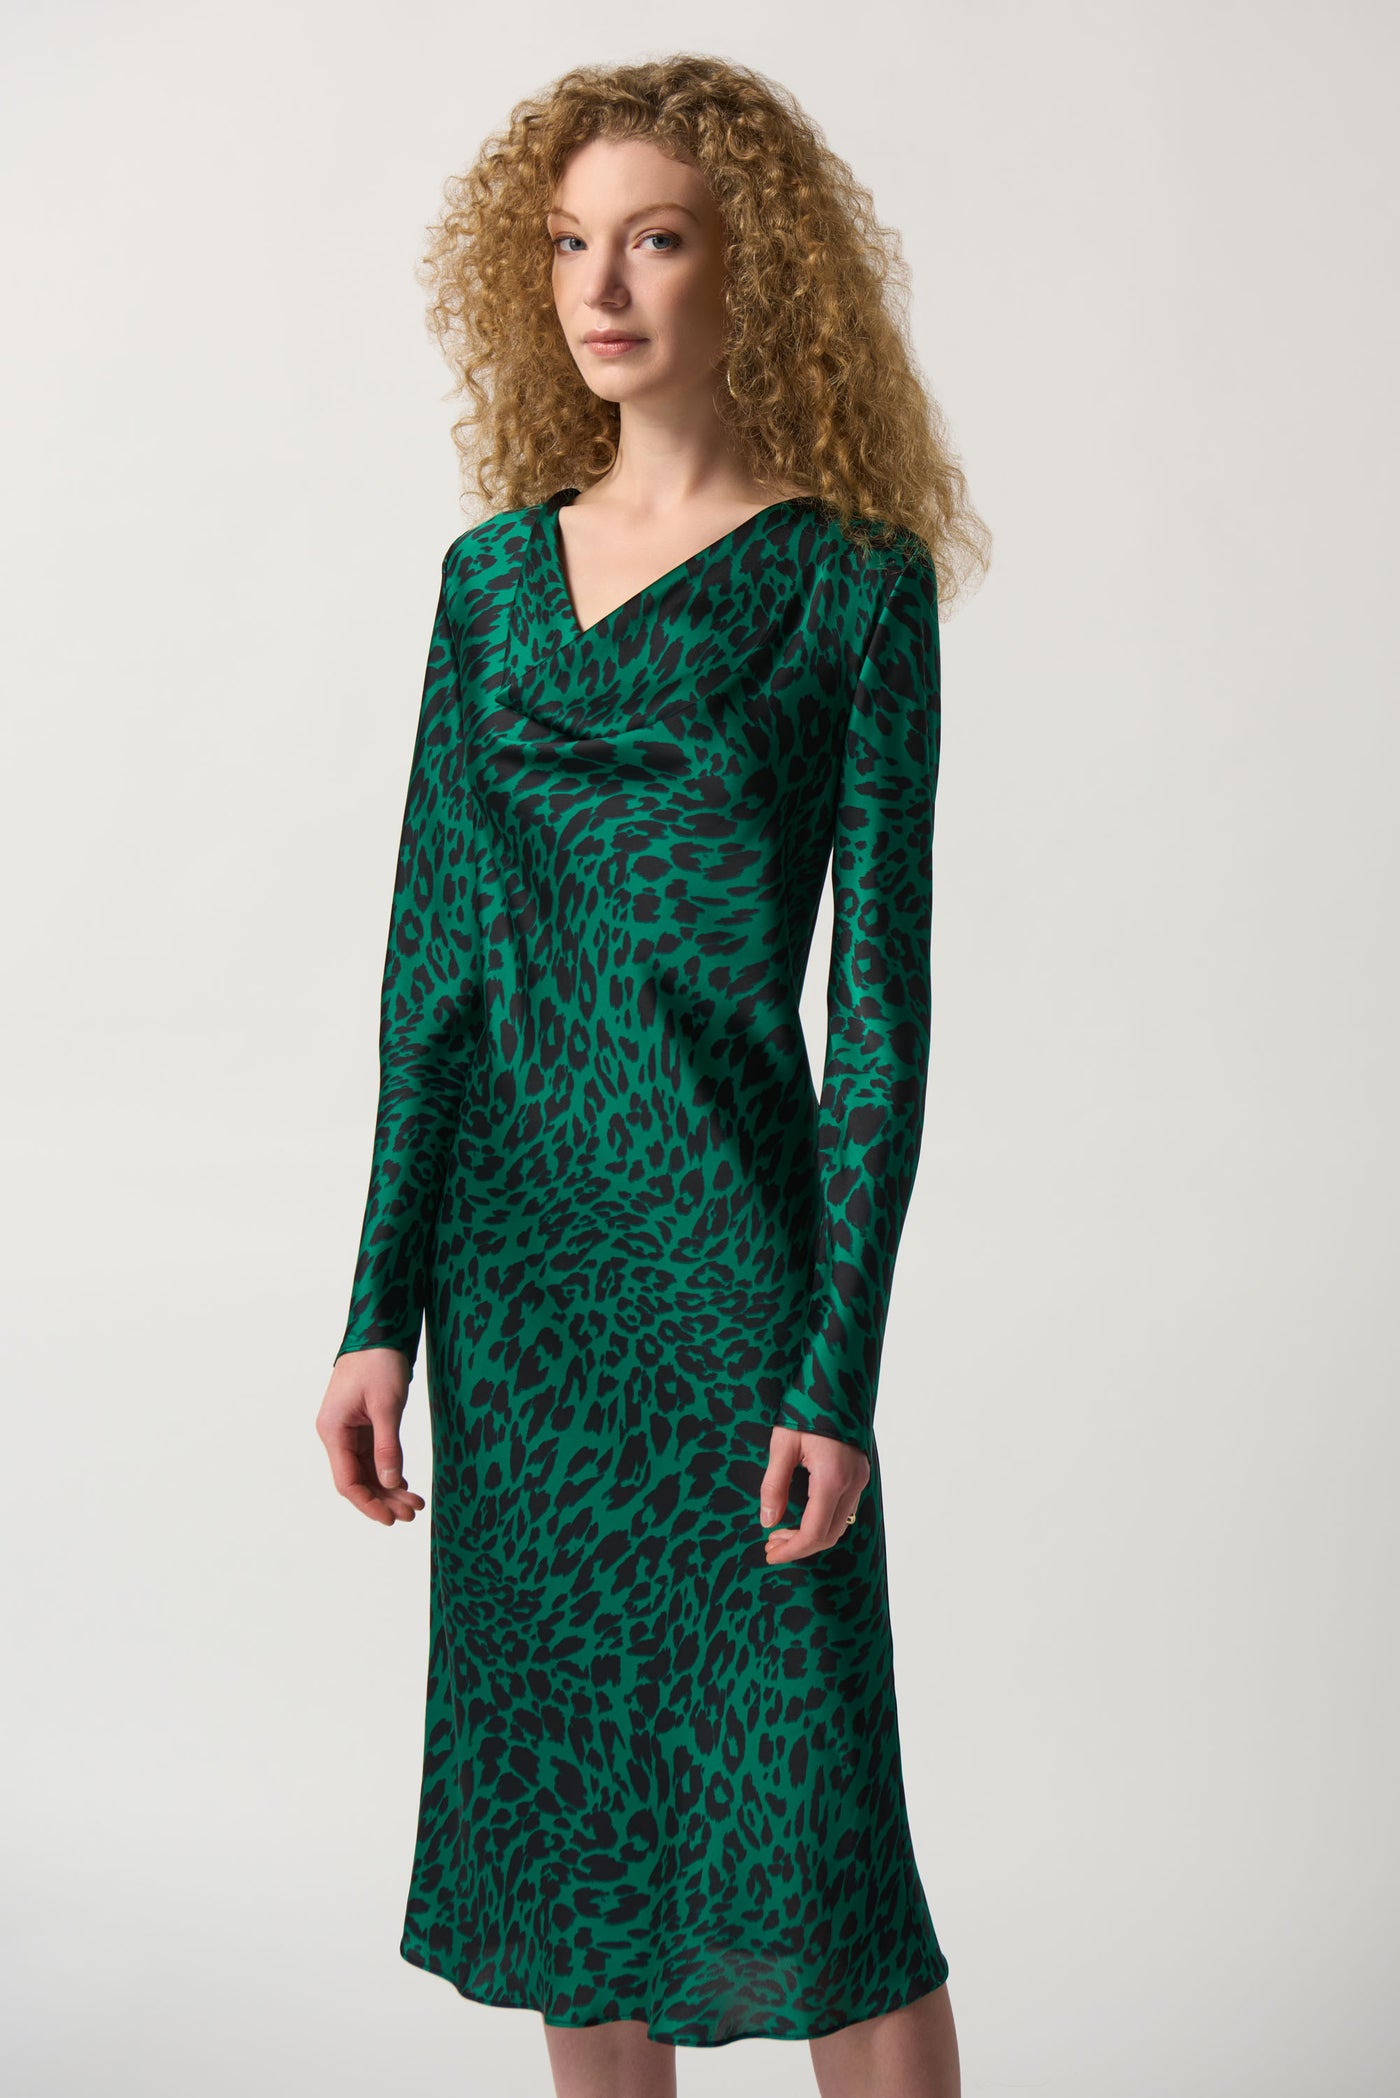 Joseph Ribkoff Black & Green Leopard Print Dress